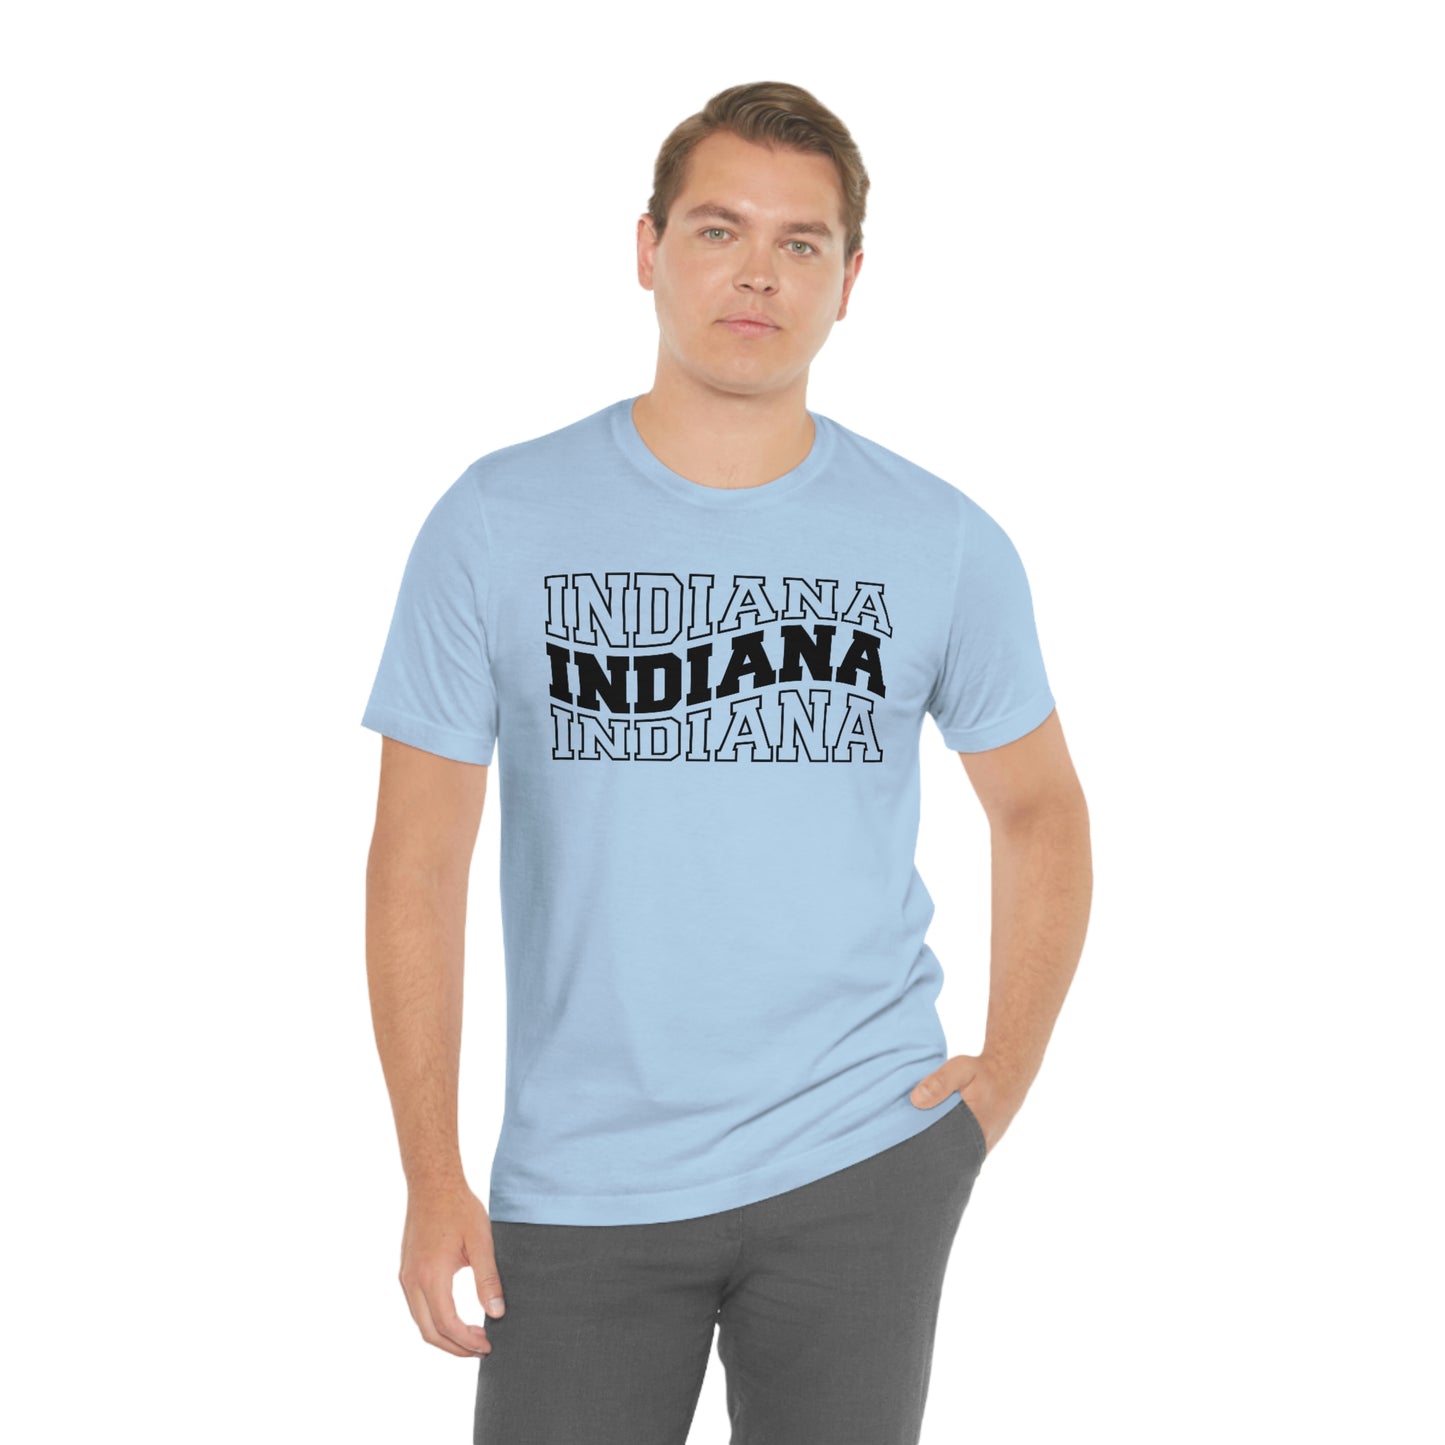 Indiana Varsity Letters Wavy Short Sleeve T-shirt